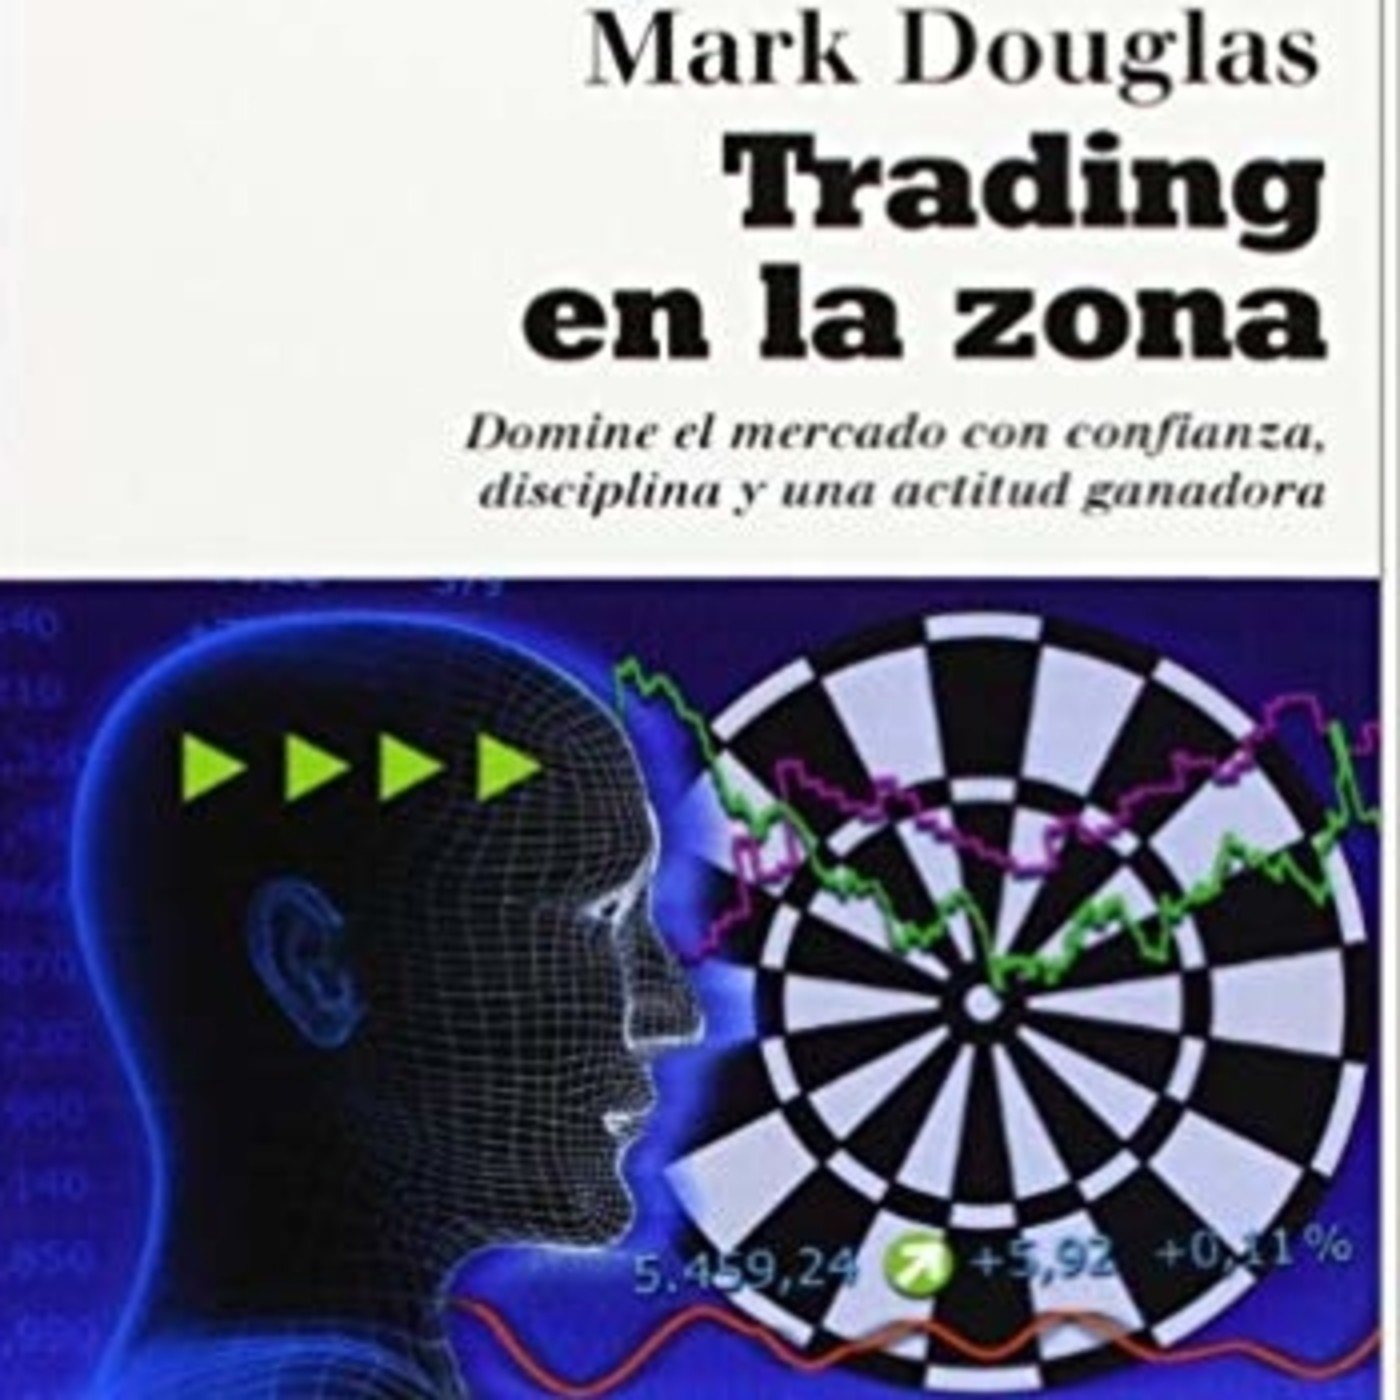 CAP 6 Trading en la Zona Mark Douglas Audiolibro completo libros para traders